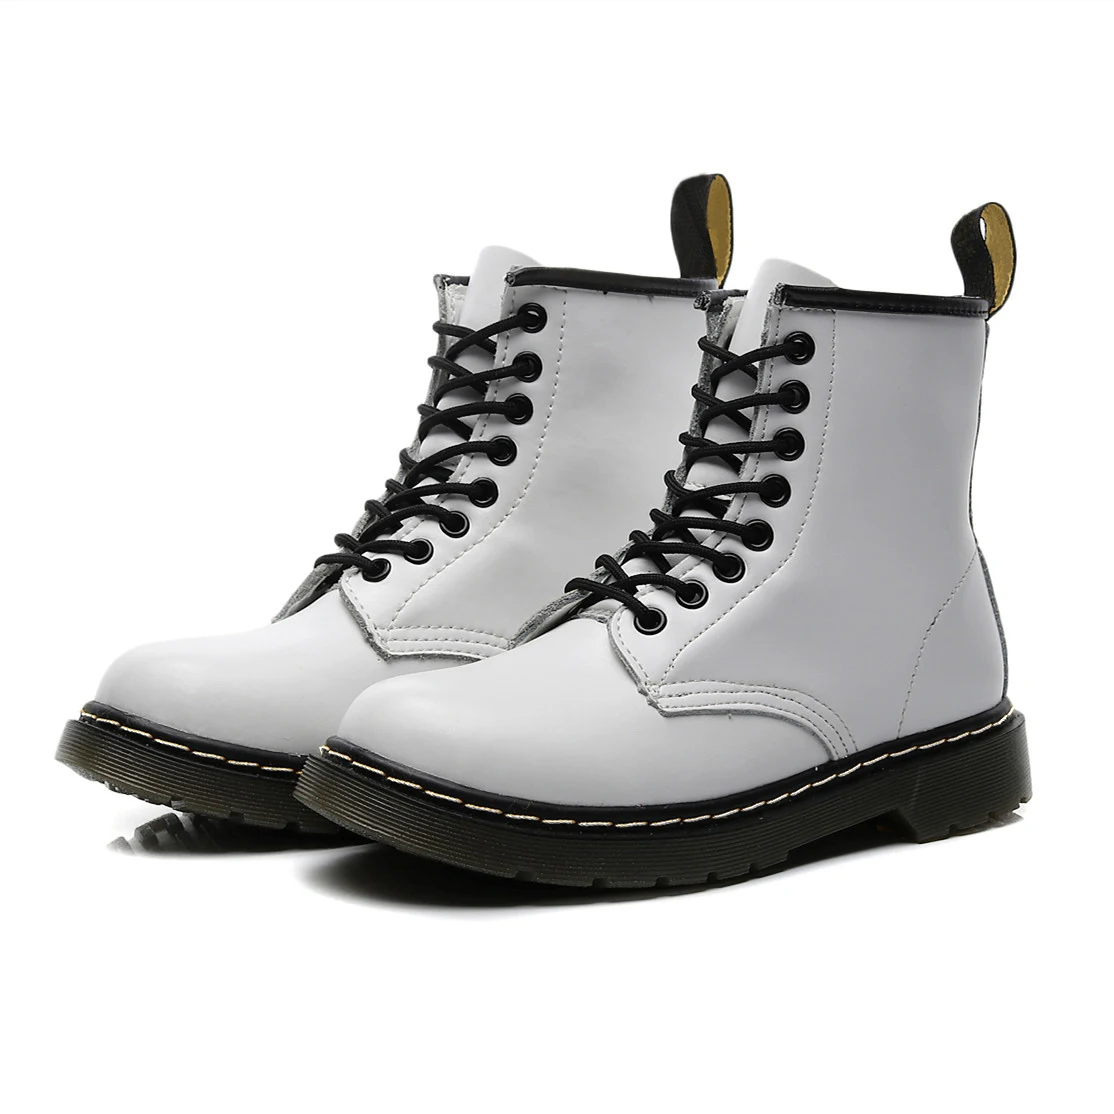 Vastwave/кожаные мужские Ботинки martin для влюбленных Мужская обувь мотоботы для взрослых зимняя обувь мужская обувь размера плюс 47 48